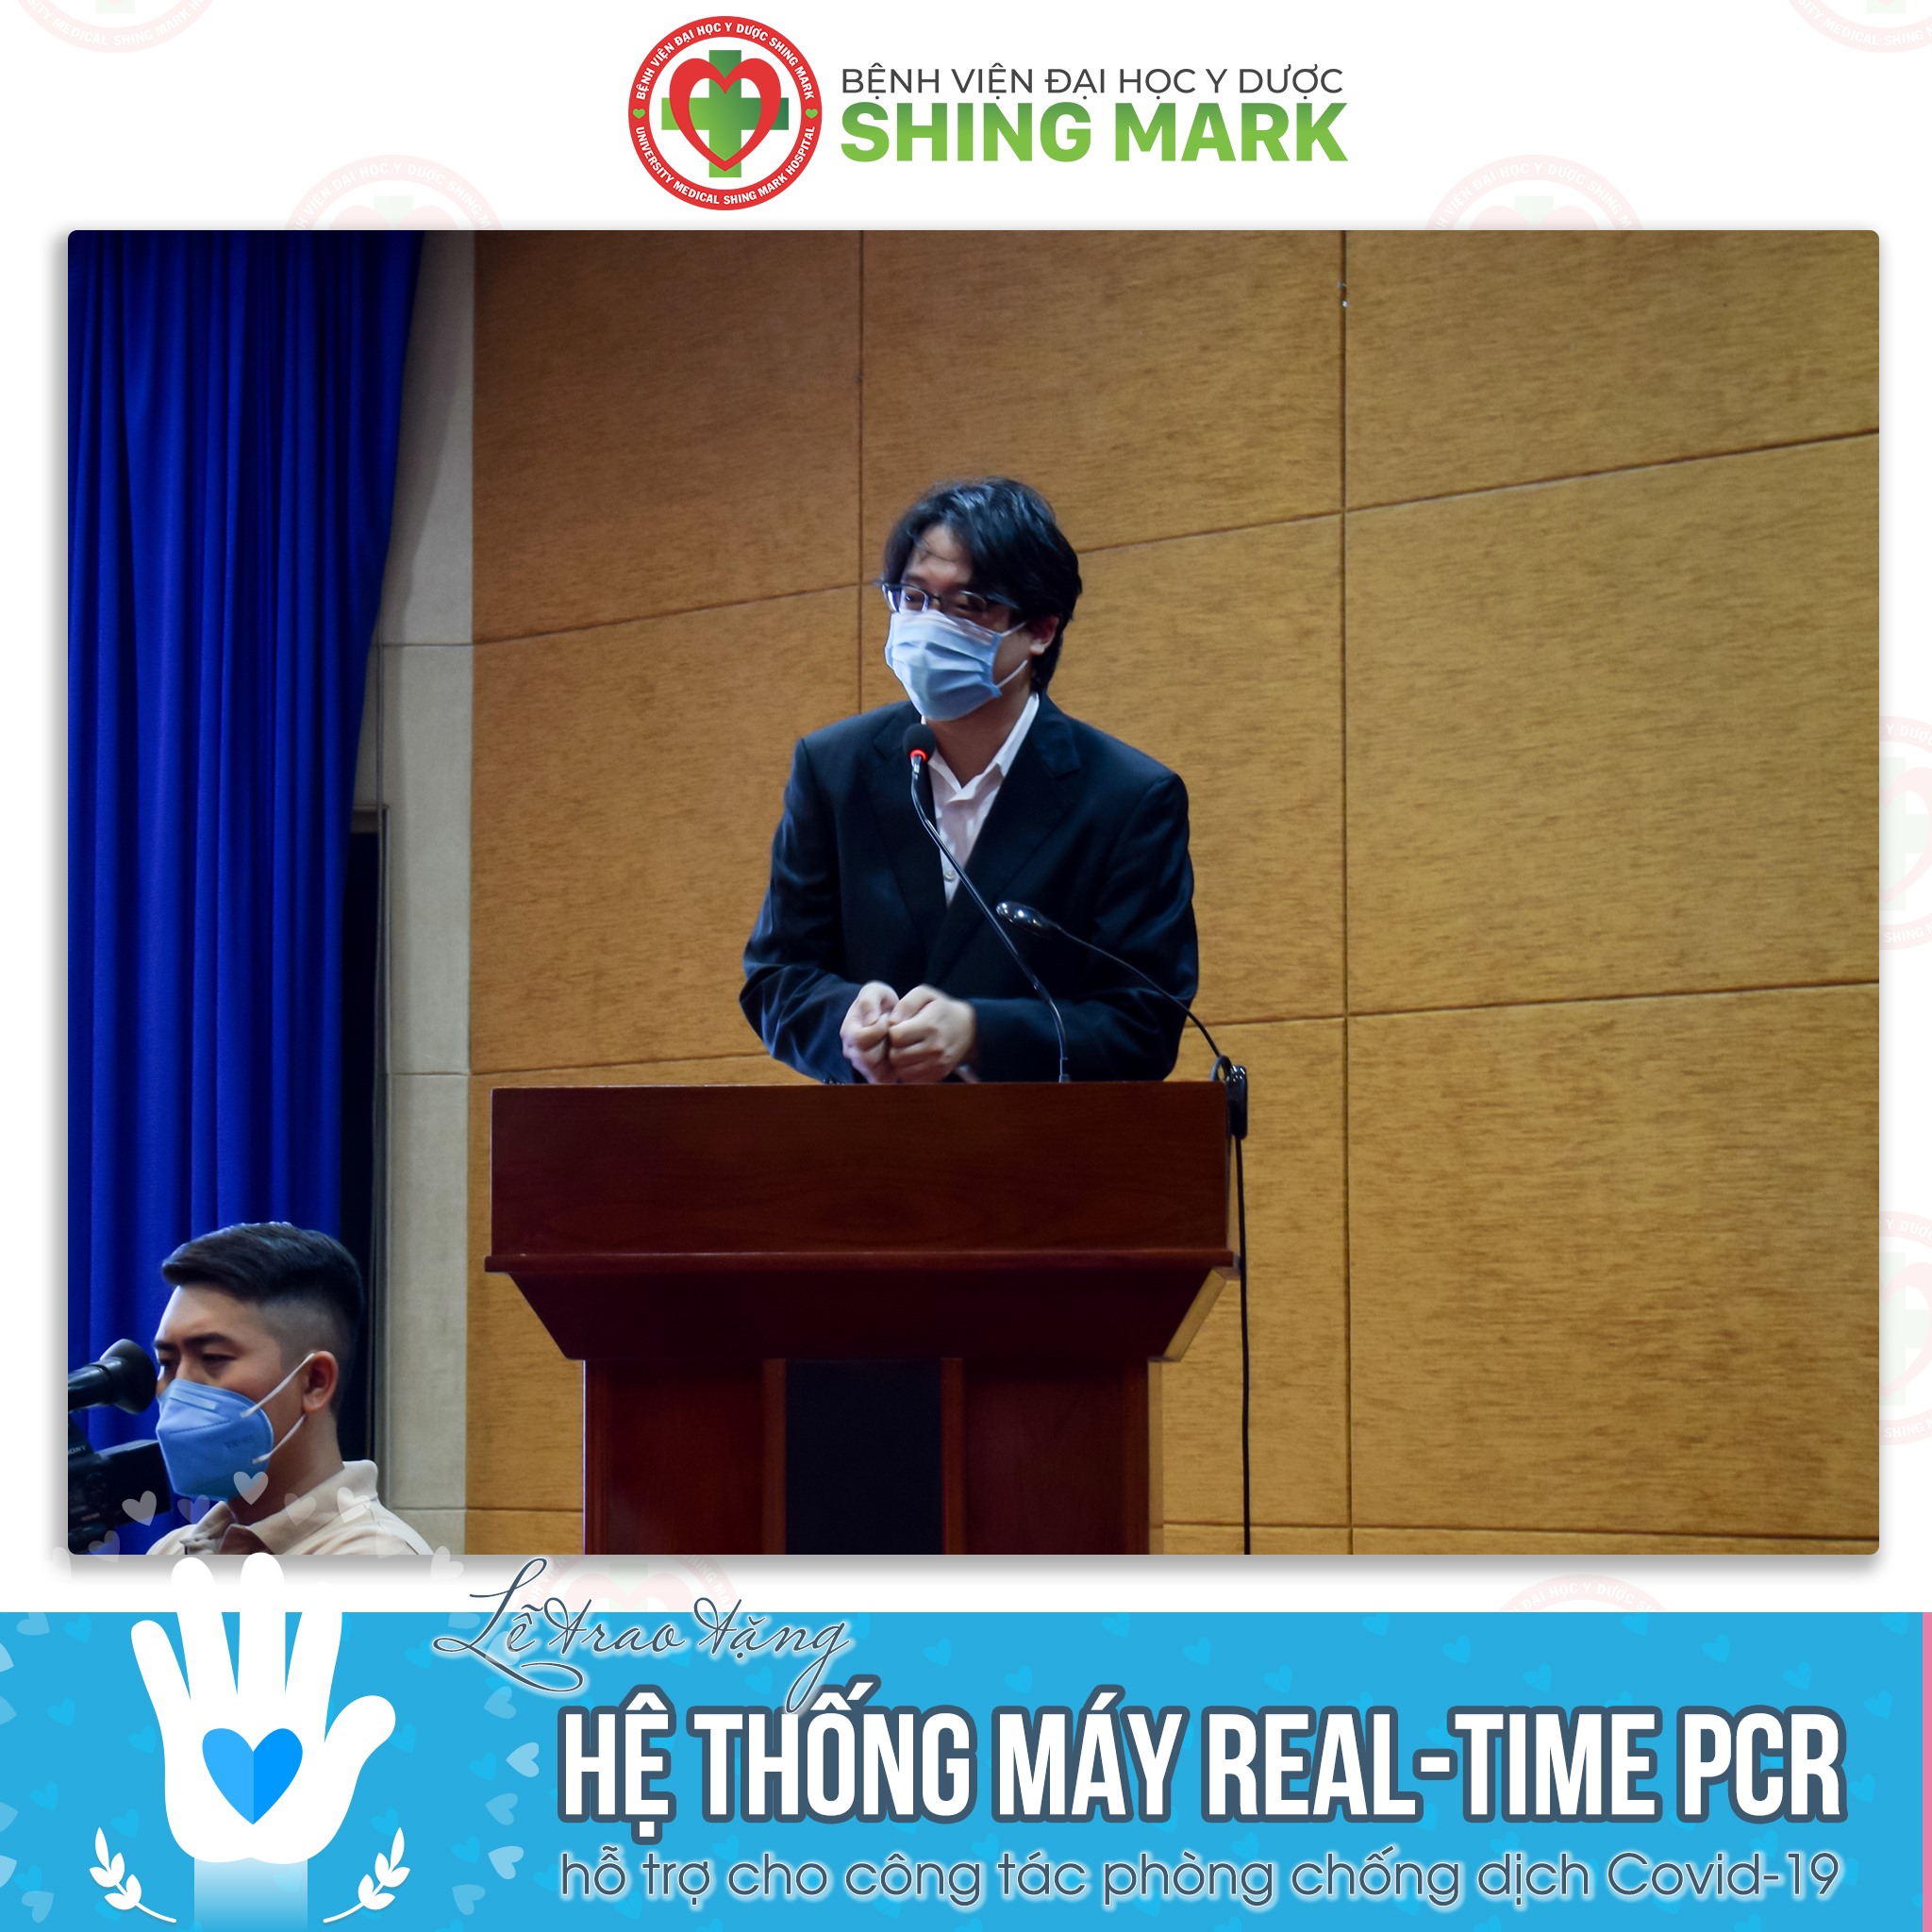 Ông David Chao - Phó Tổng Giám đốc Bệnh viện ĐHYD Shing Mark